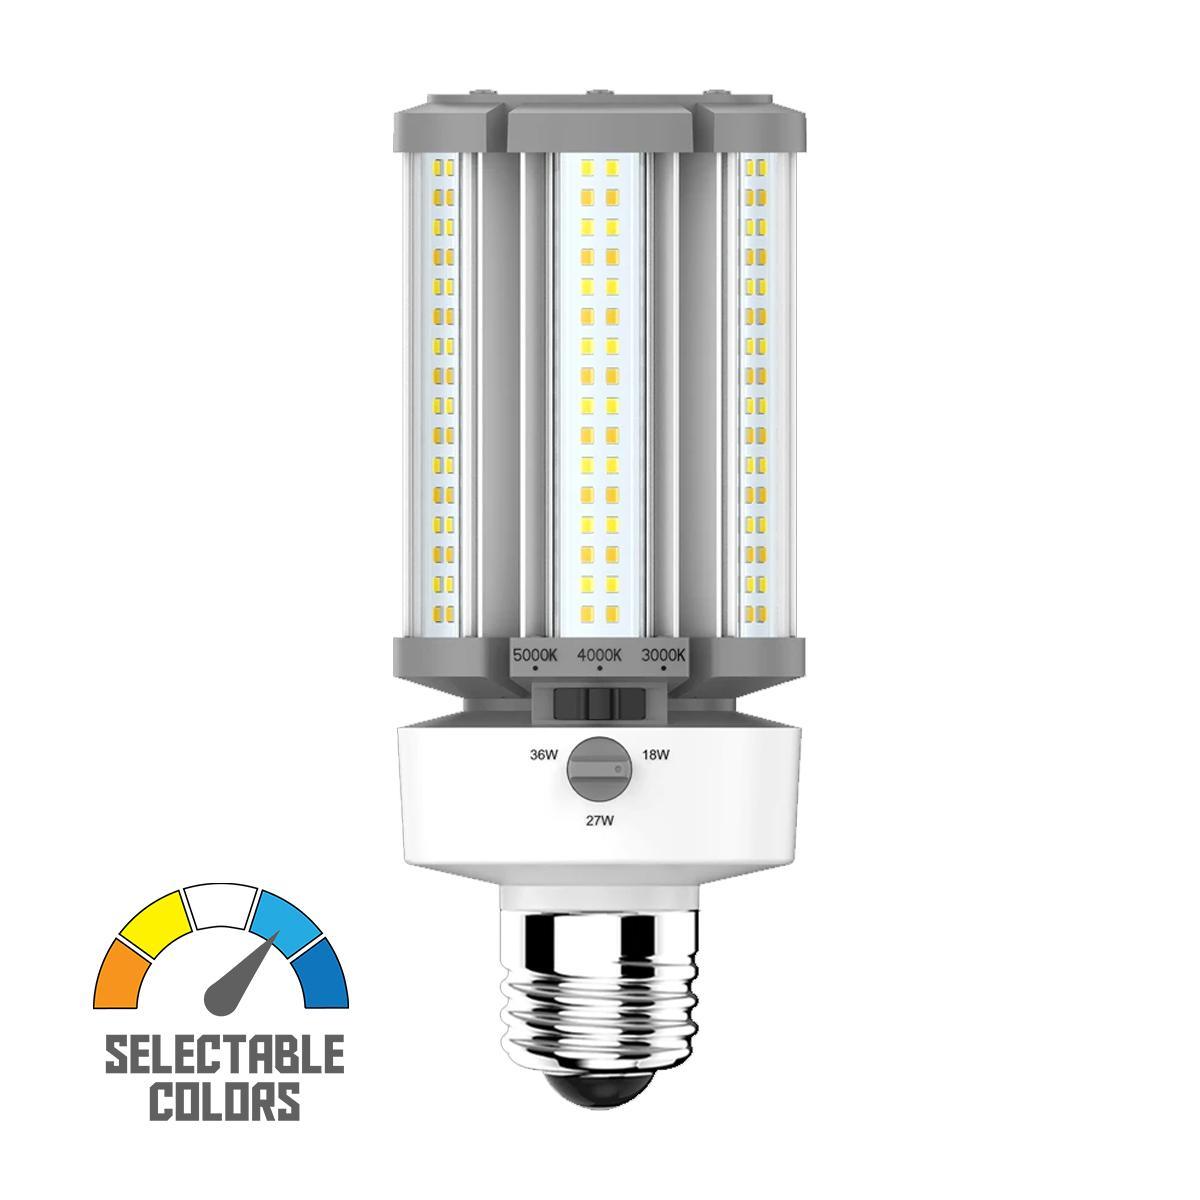 LED Corn Retrofit Lamp, 36W, 5220 Lumens, Field Adjustable, 30K/40K/50K, E26 Base, 120-277V